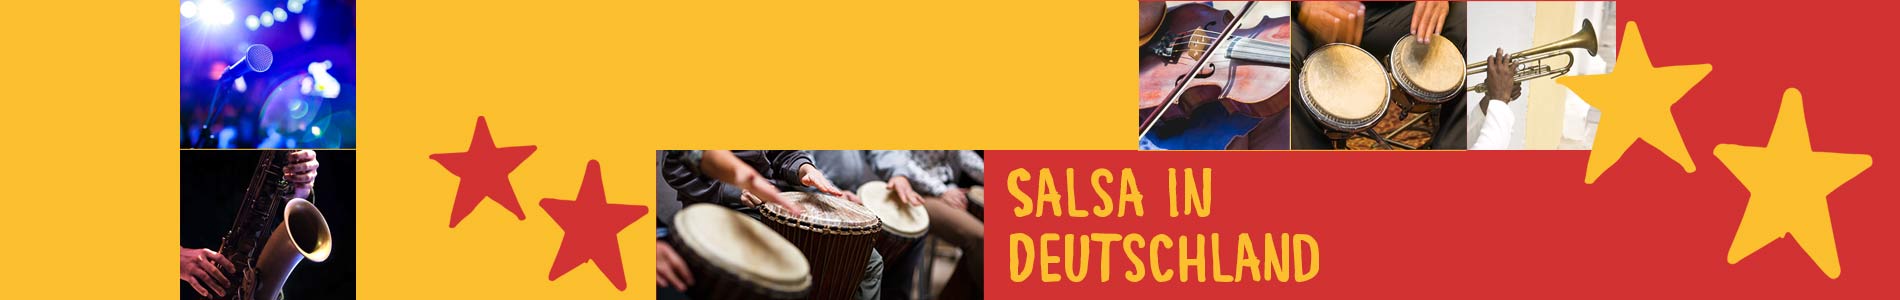 Salsa in Bosau – Salsa lernen und tanzen, Tanzkurse, Partys, Veranstaltungen